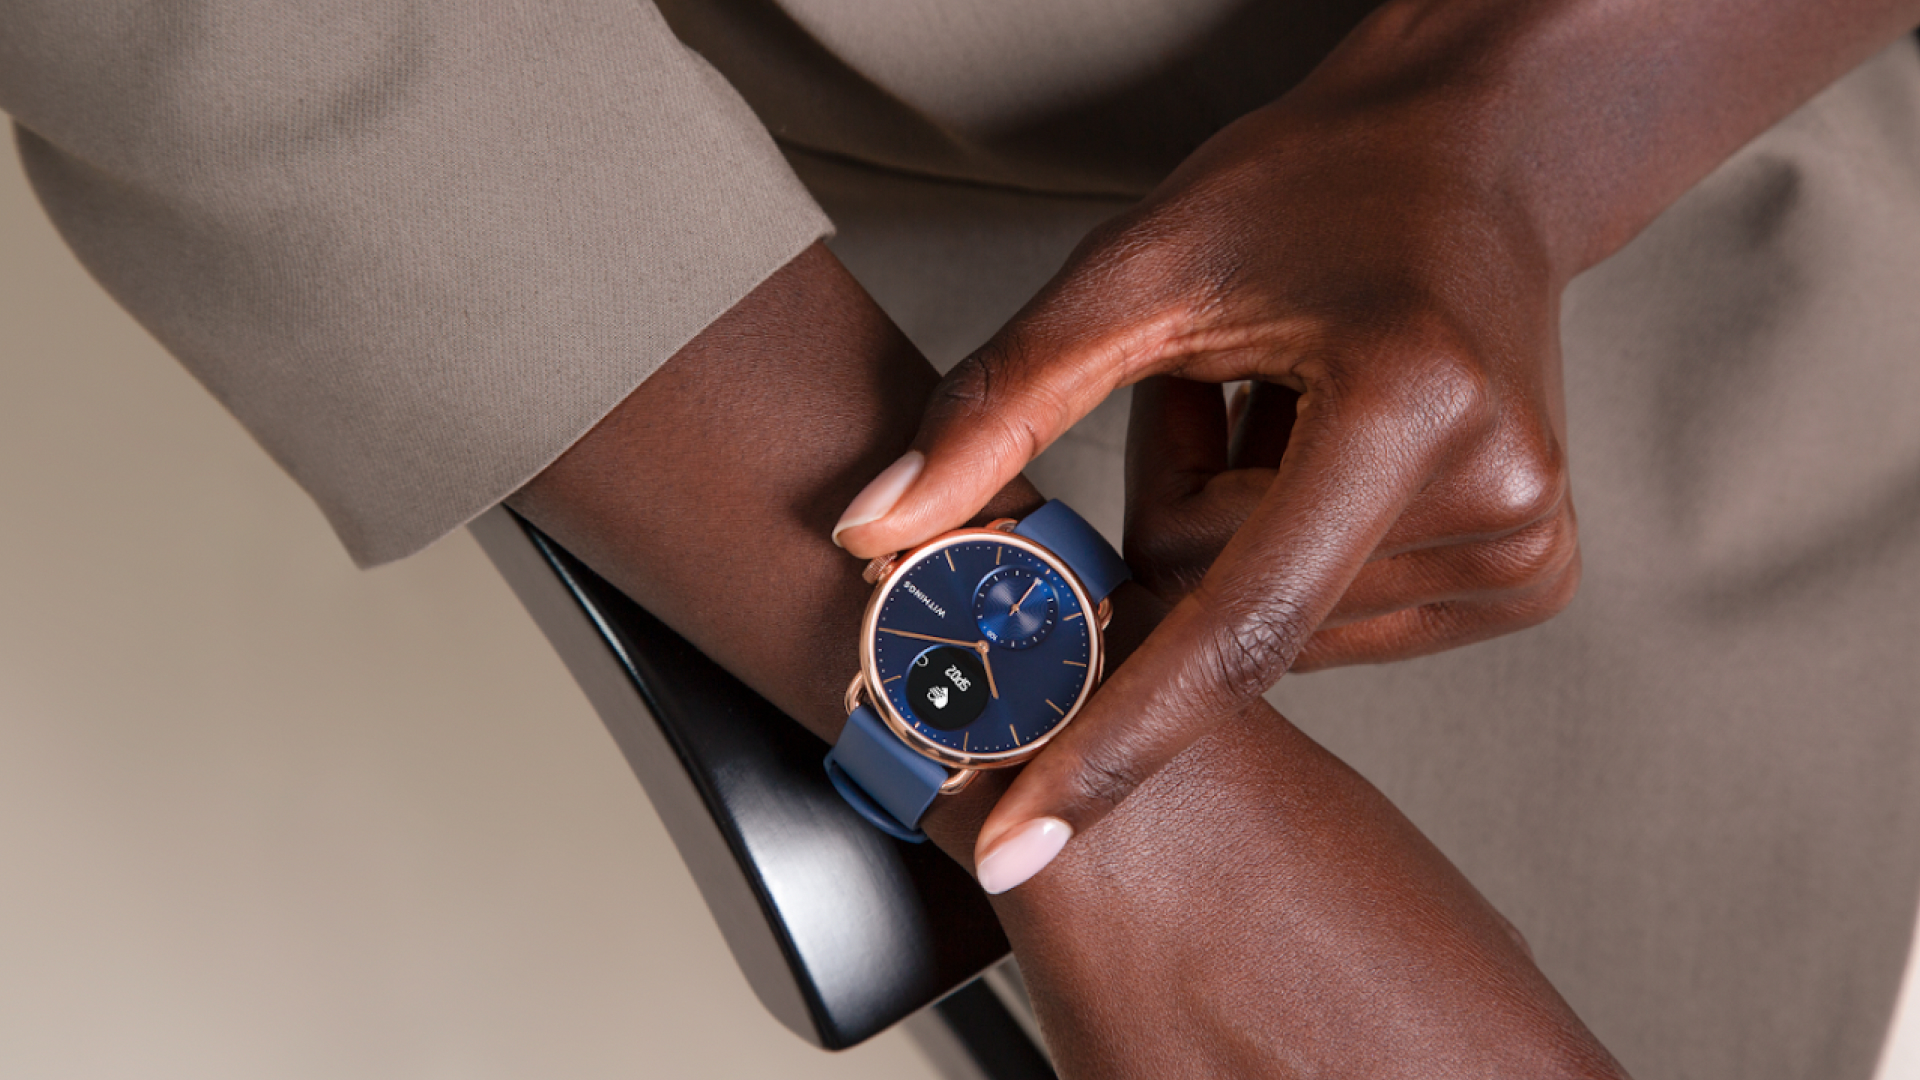 Withings développe la montre santé la plus avancée jamais conçue